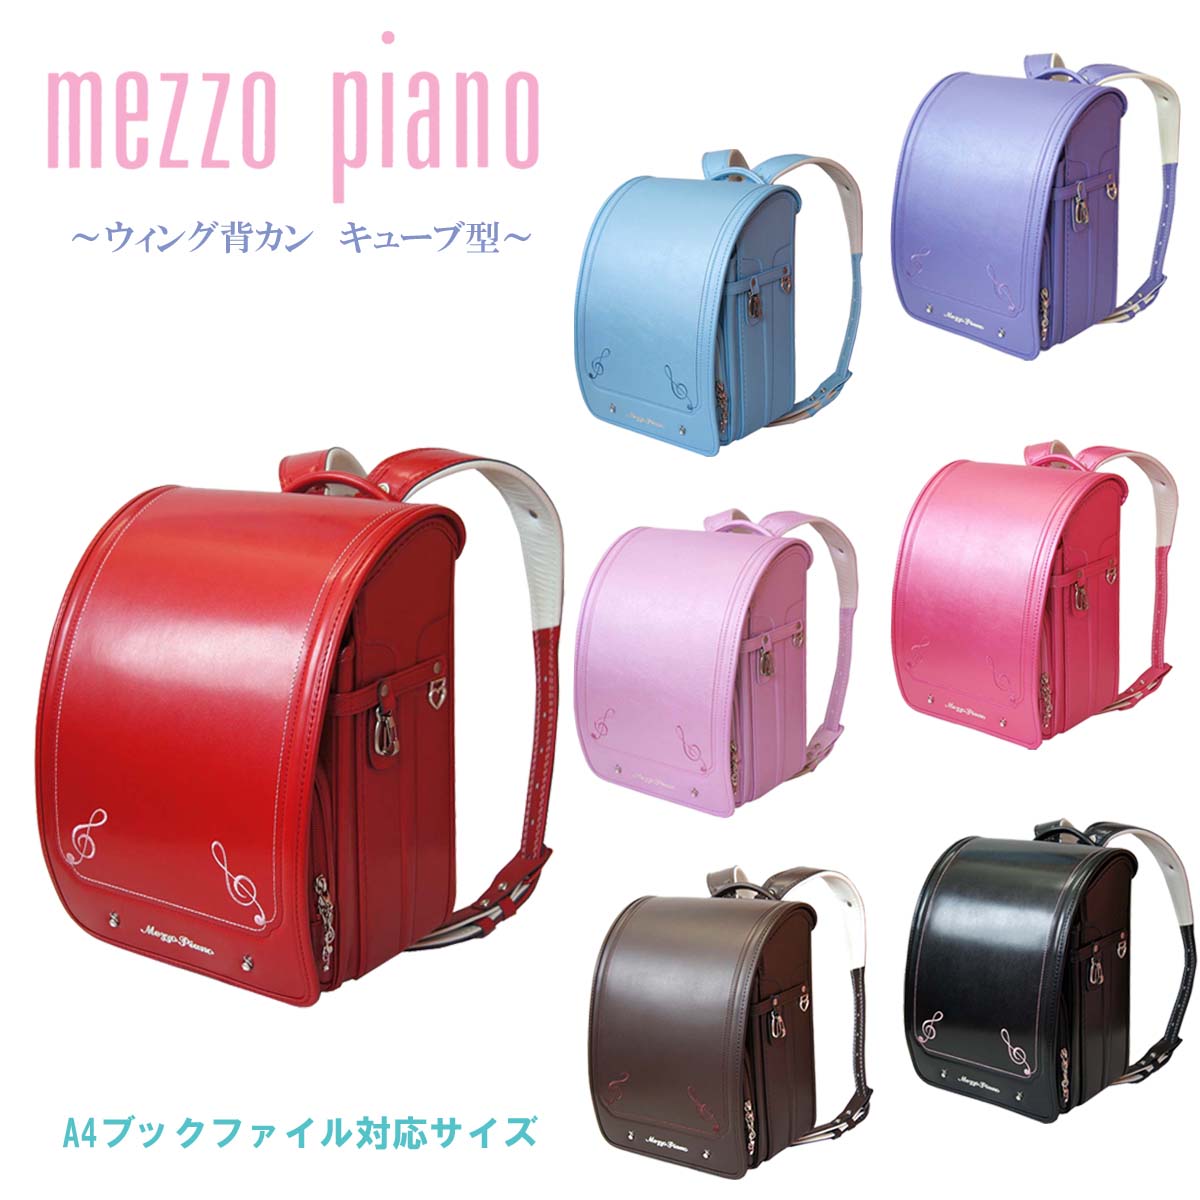 バッグ・ランドセル, ランドセル 2023 mezzo piano (wide) 12cm 0103-2403 MADE IN JAPAN()